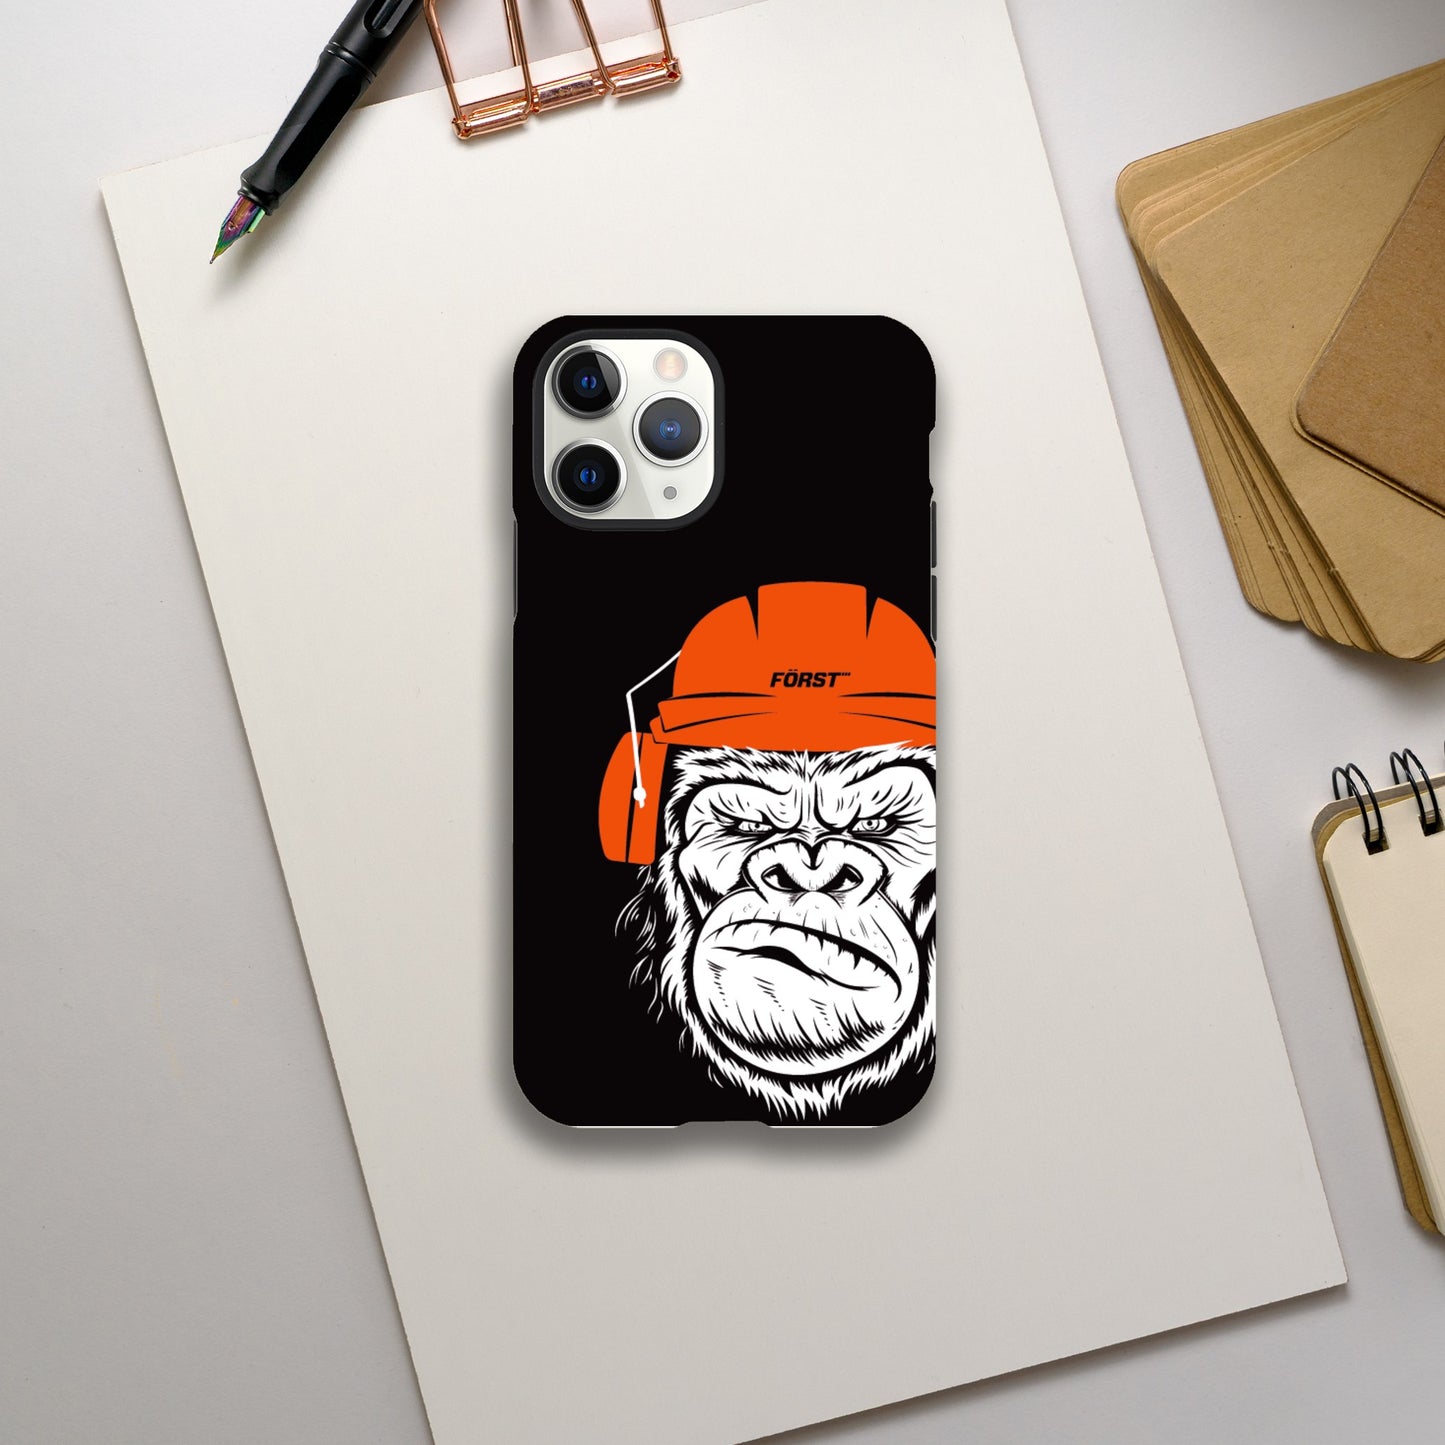 Gorilla iPhone tough cases